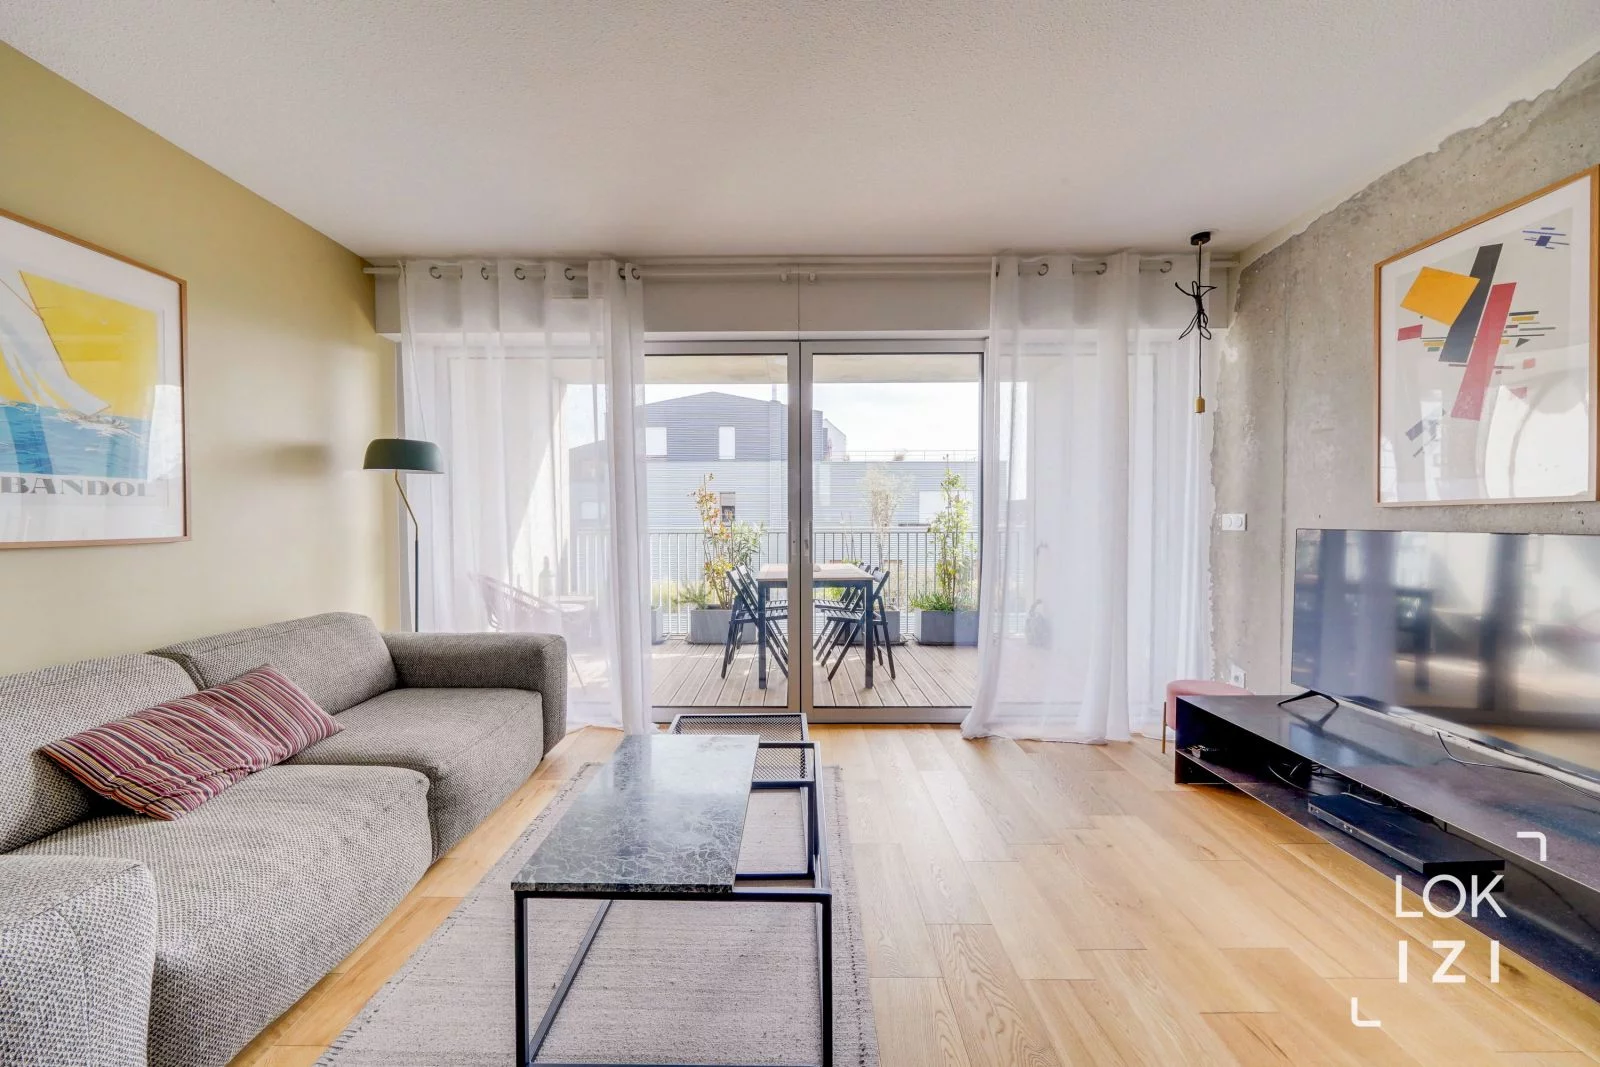 Location appartement meublé 3 pièces 67m² (Bordeaux - Bassins à flot)